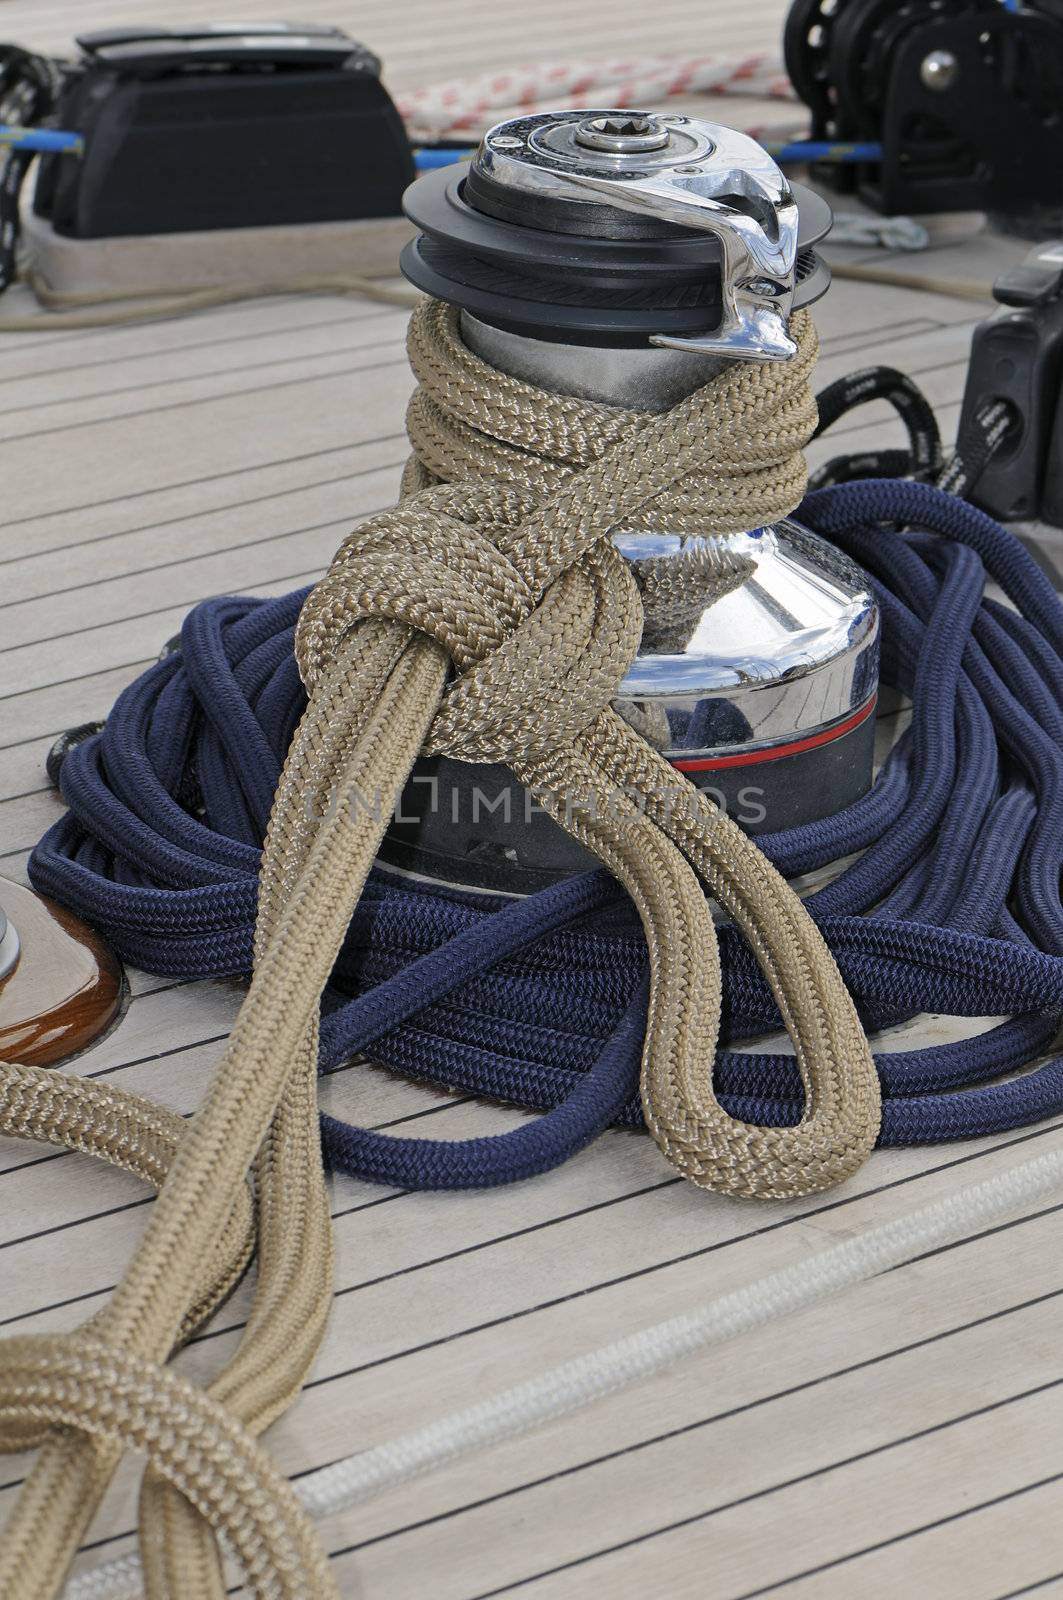 Sailboat detail by lebanmax